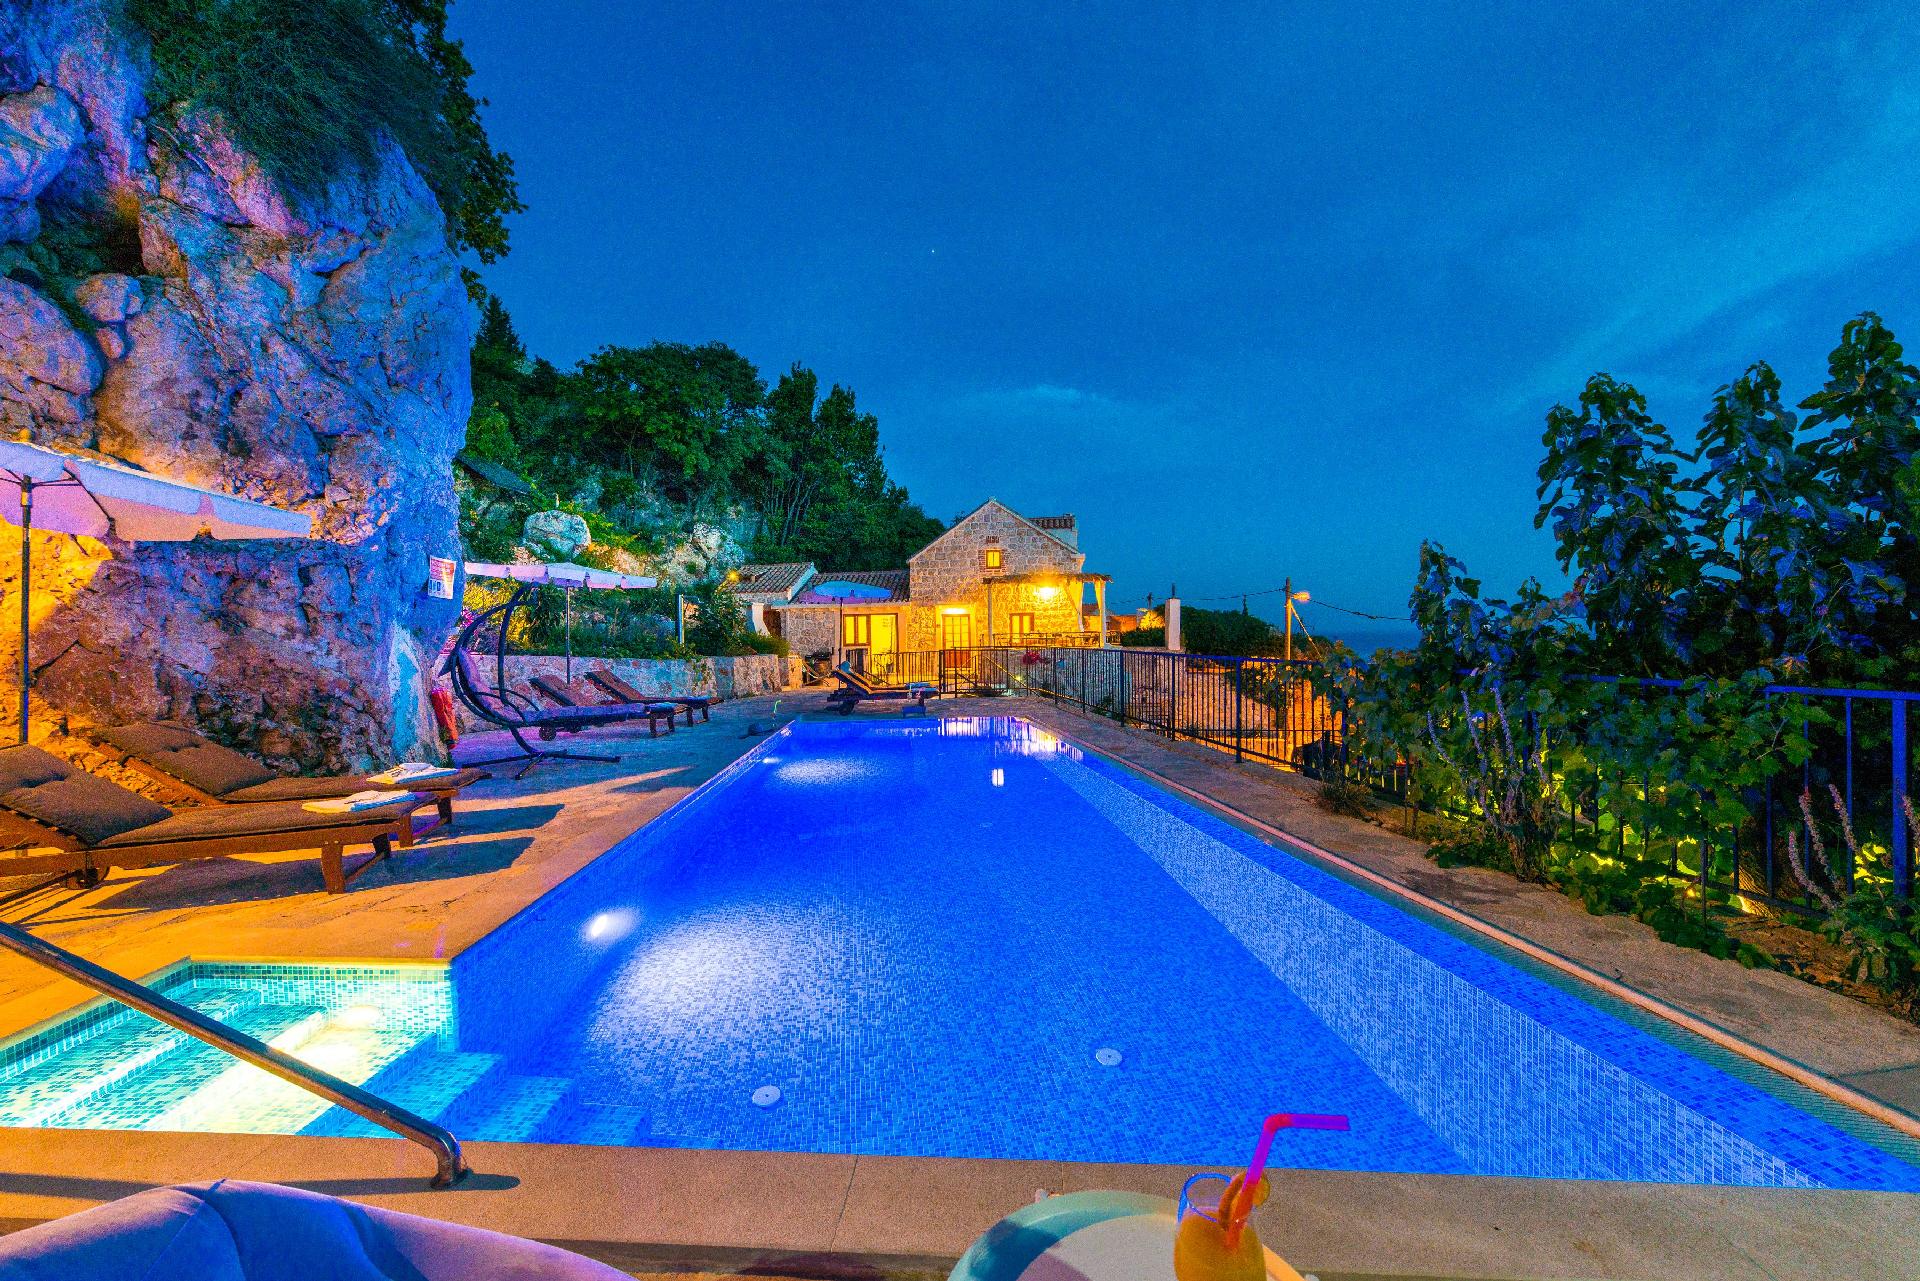 Ferienhaus mit Privatpool für 8 Personen ca.  Ferienhaus in Dalmatien